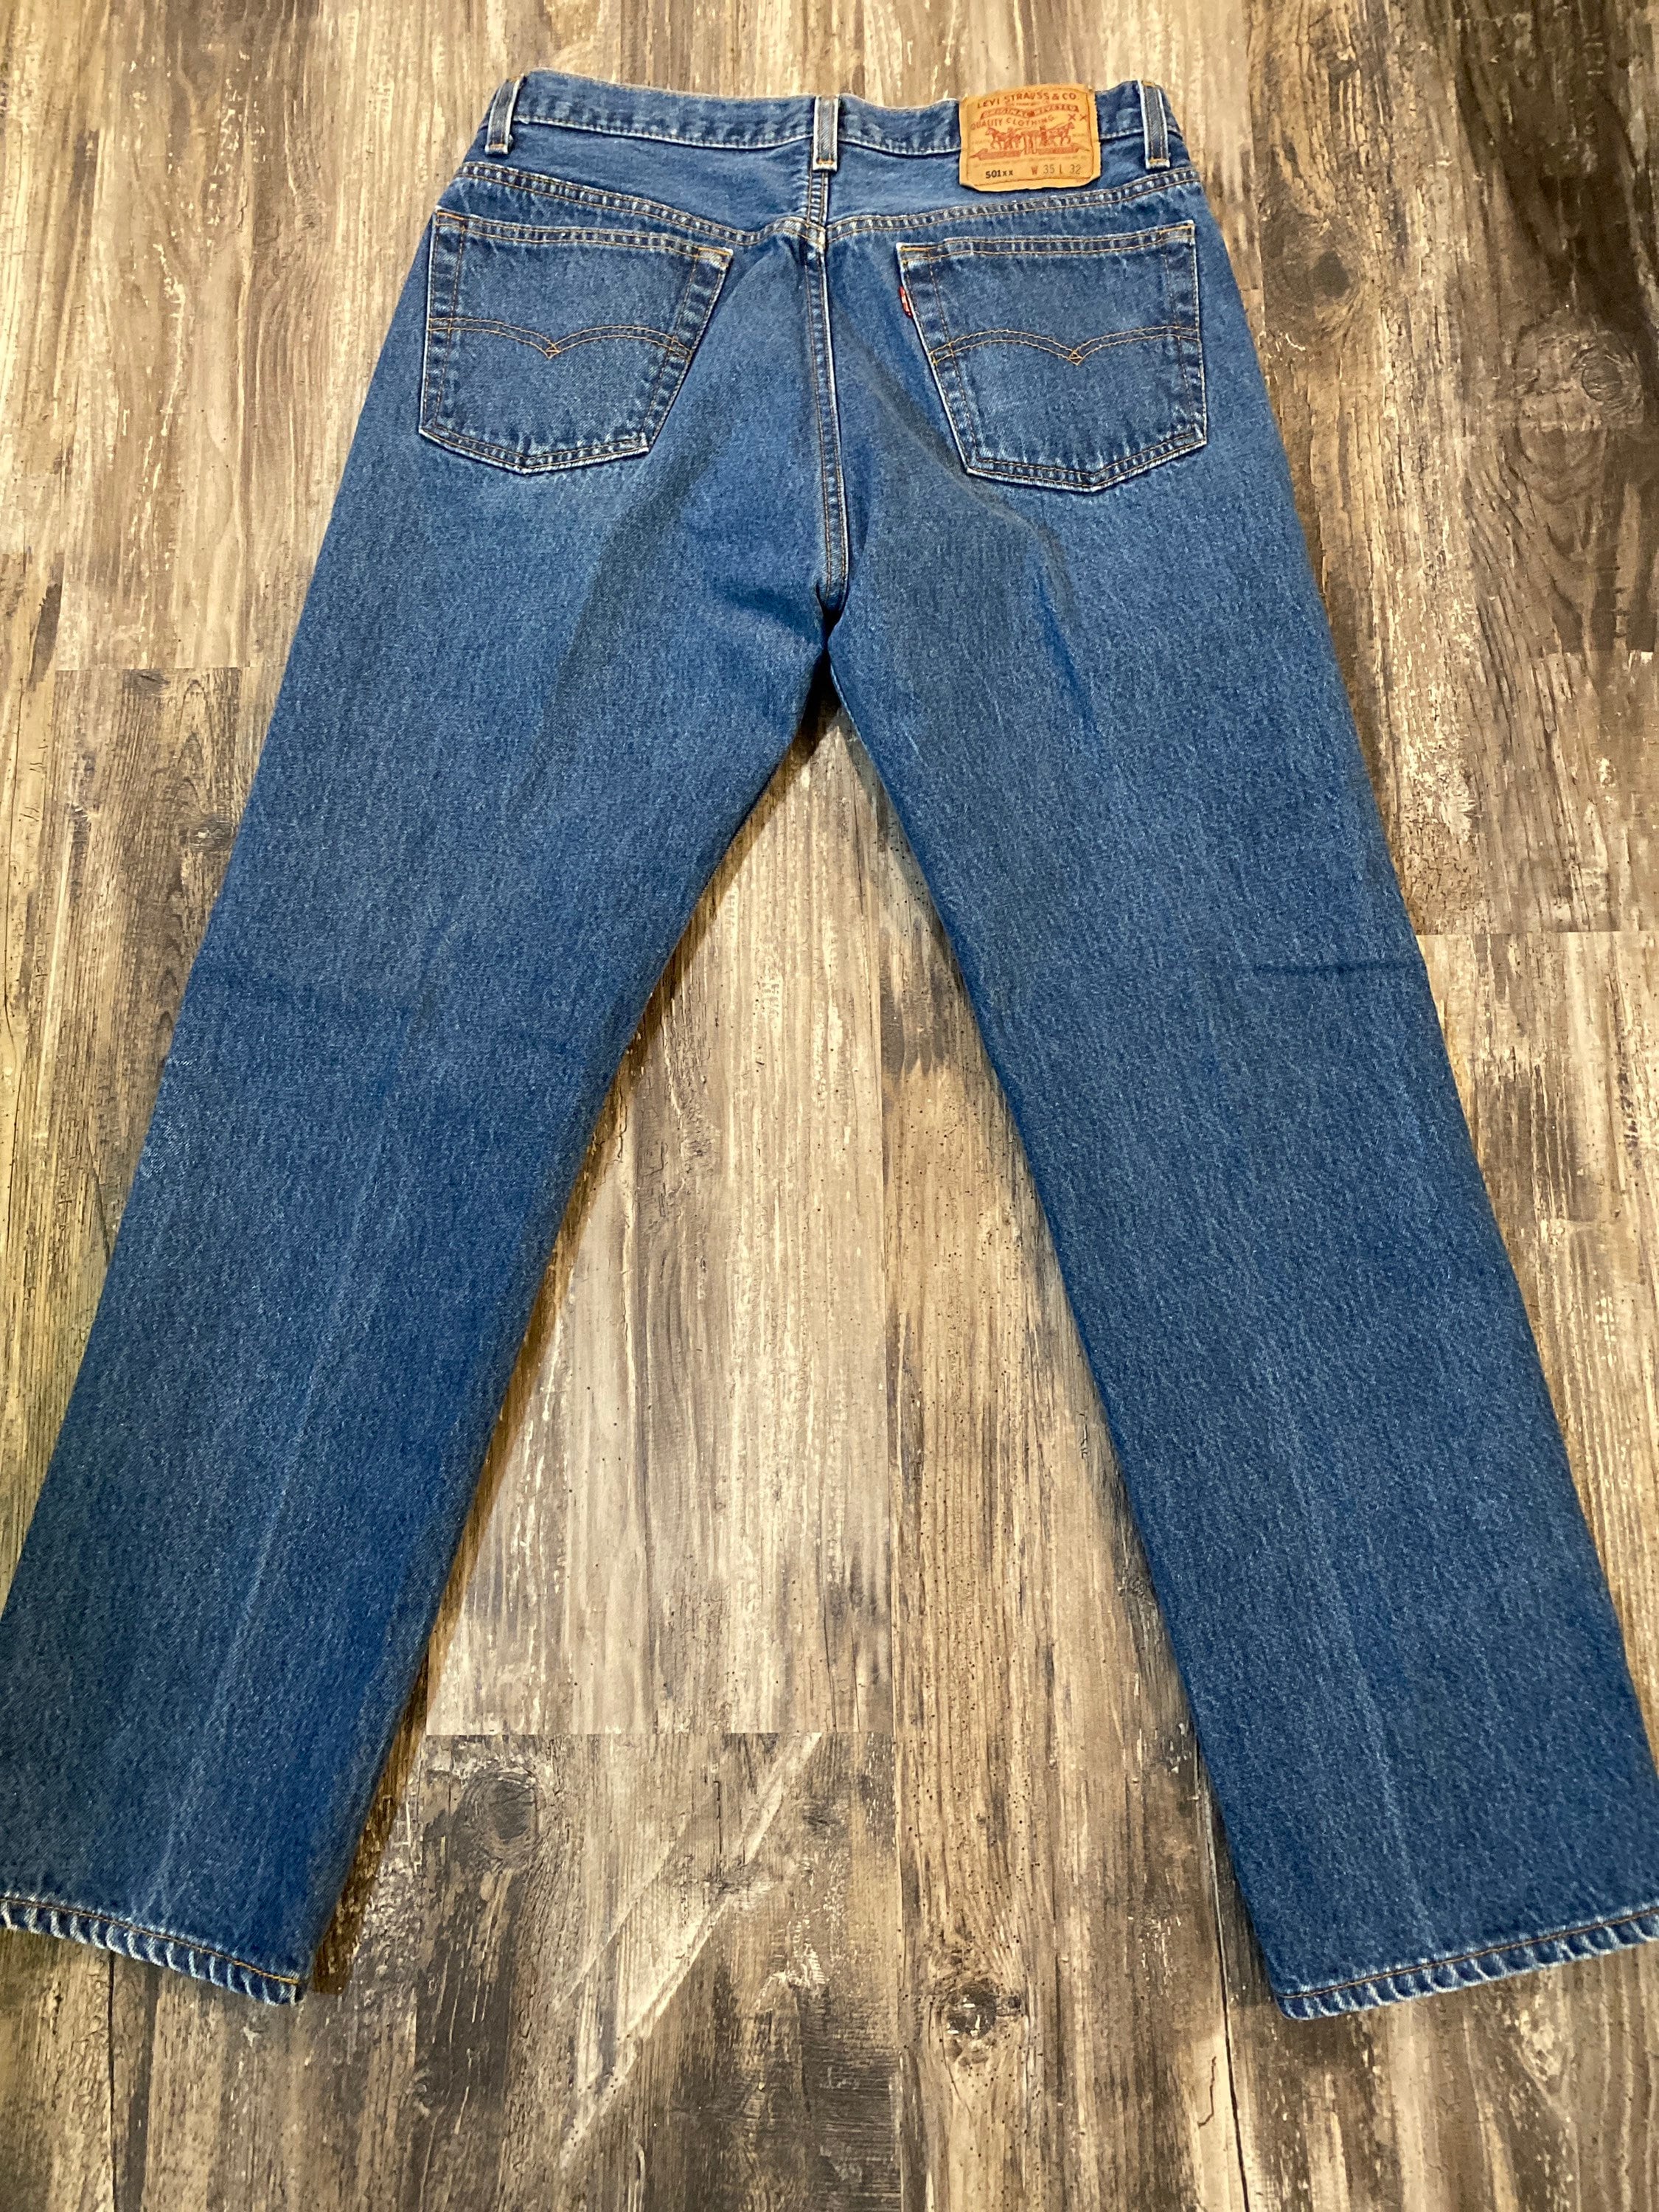 Vintage Levis xx Original s Pre Shrunk Denim Jeans USA   Etsy